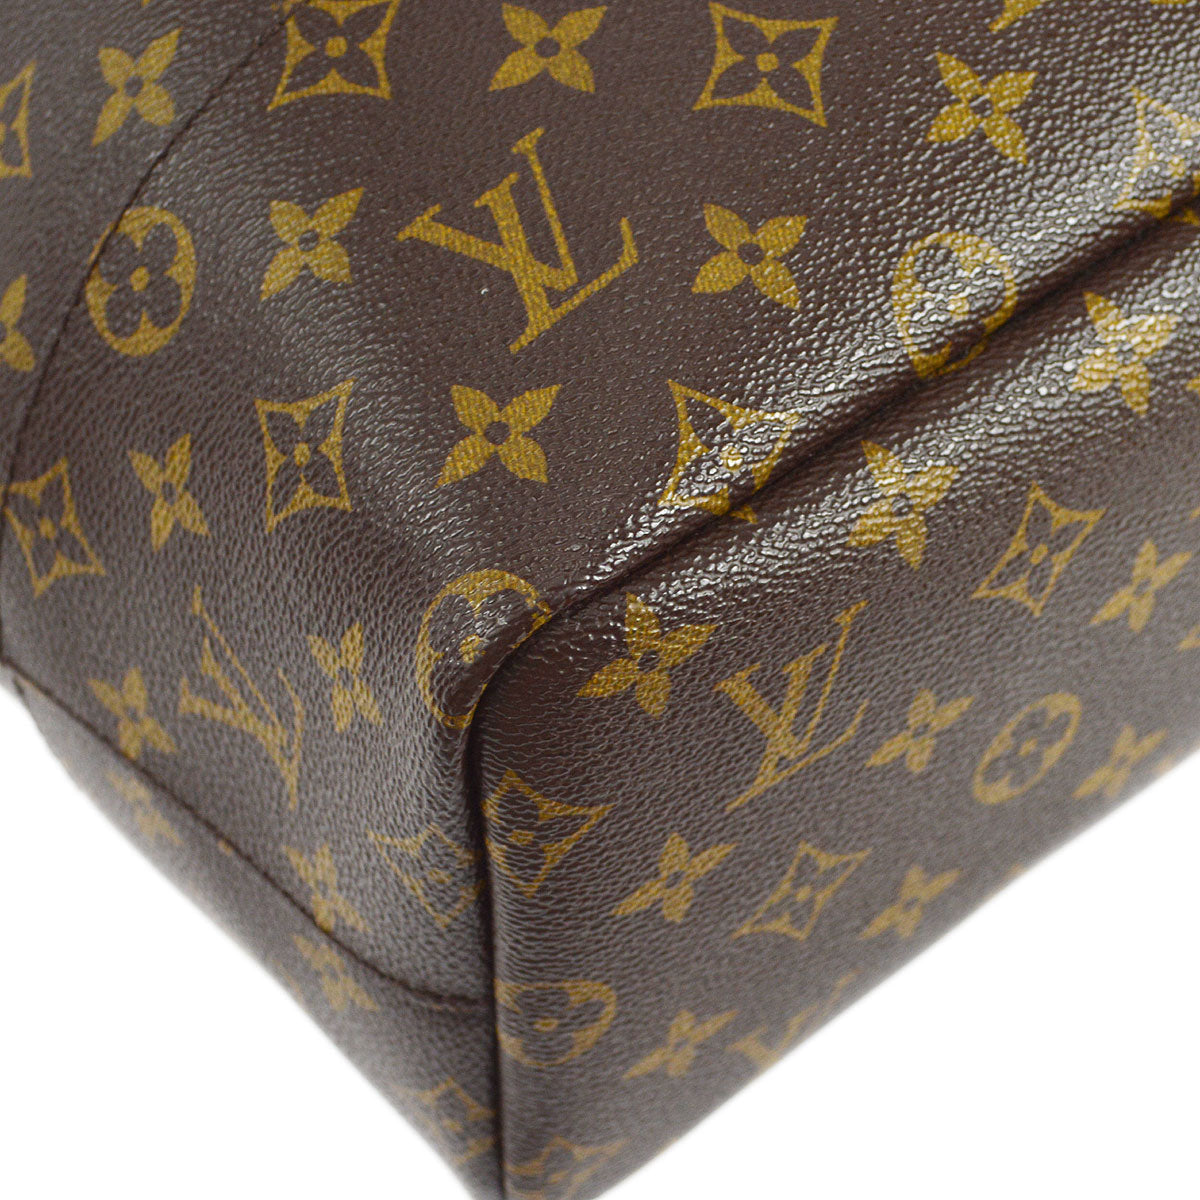 Louis Vuitton LOUIS VUITTON Monogram With Holes Tote Bag M40279